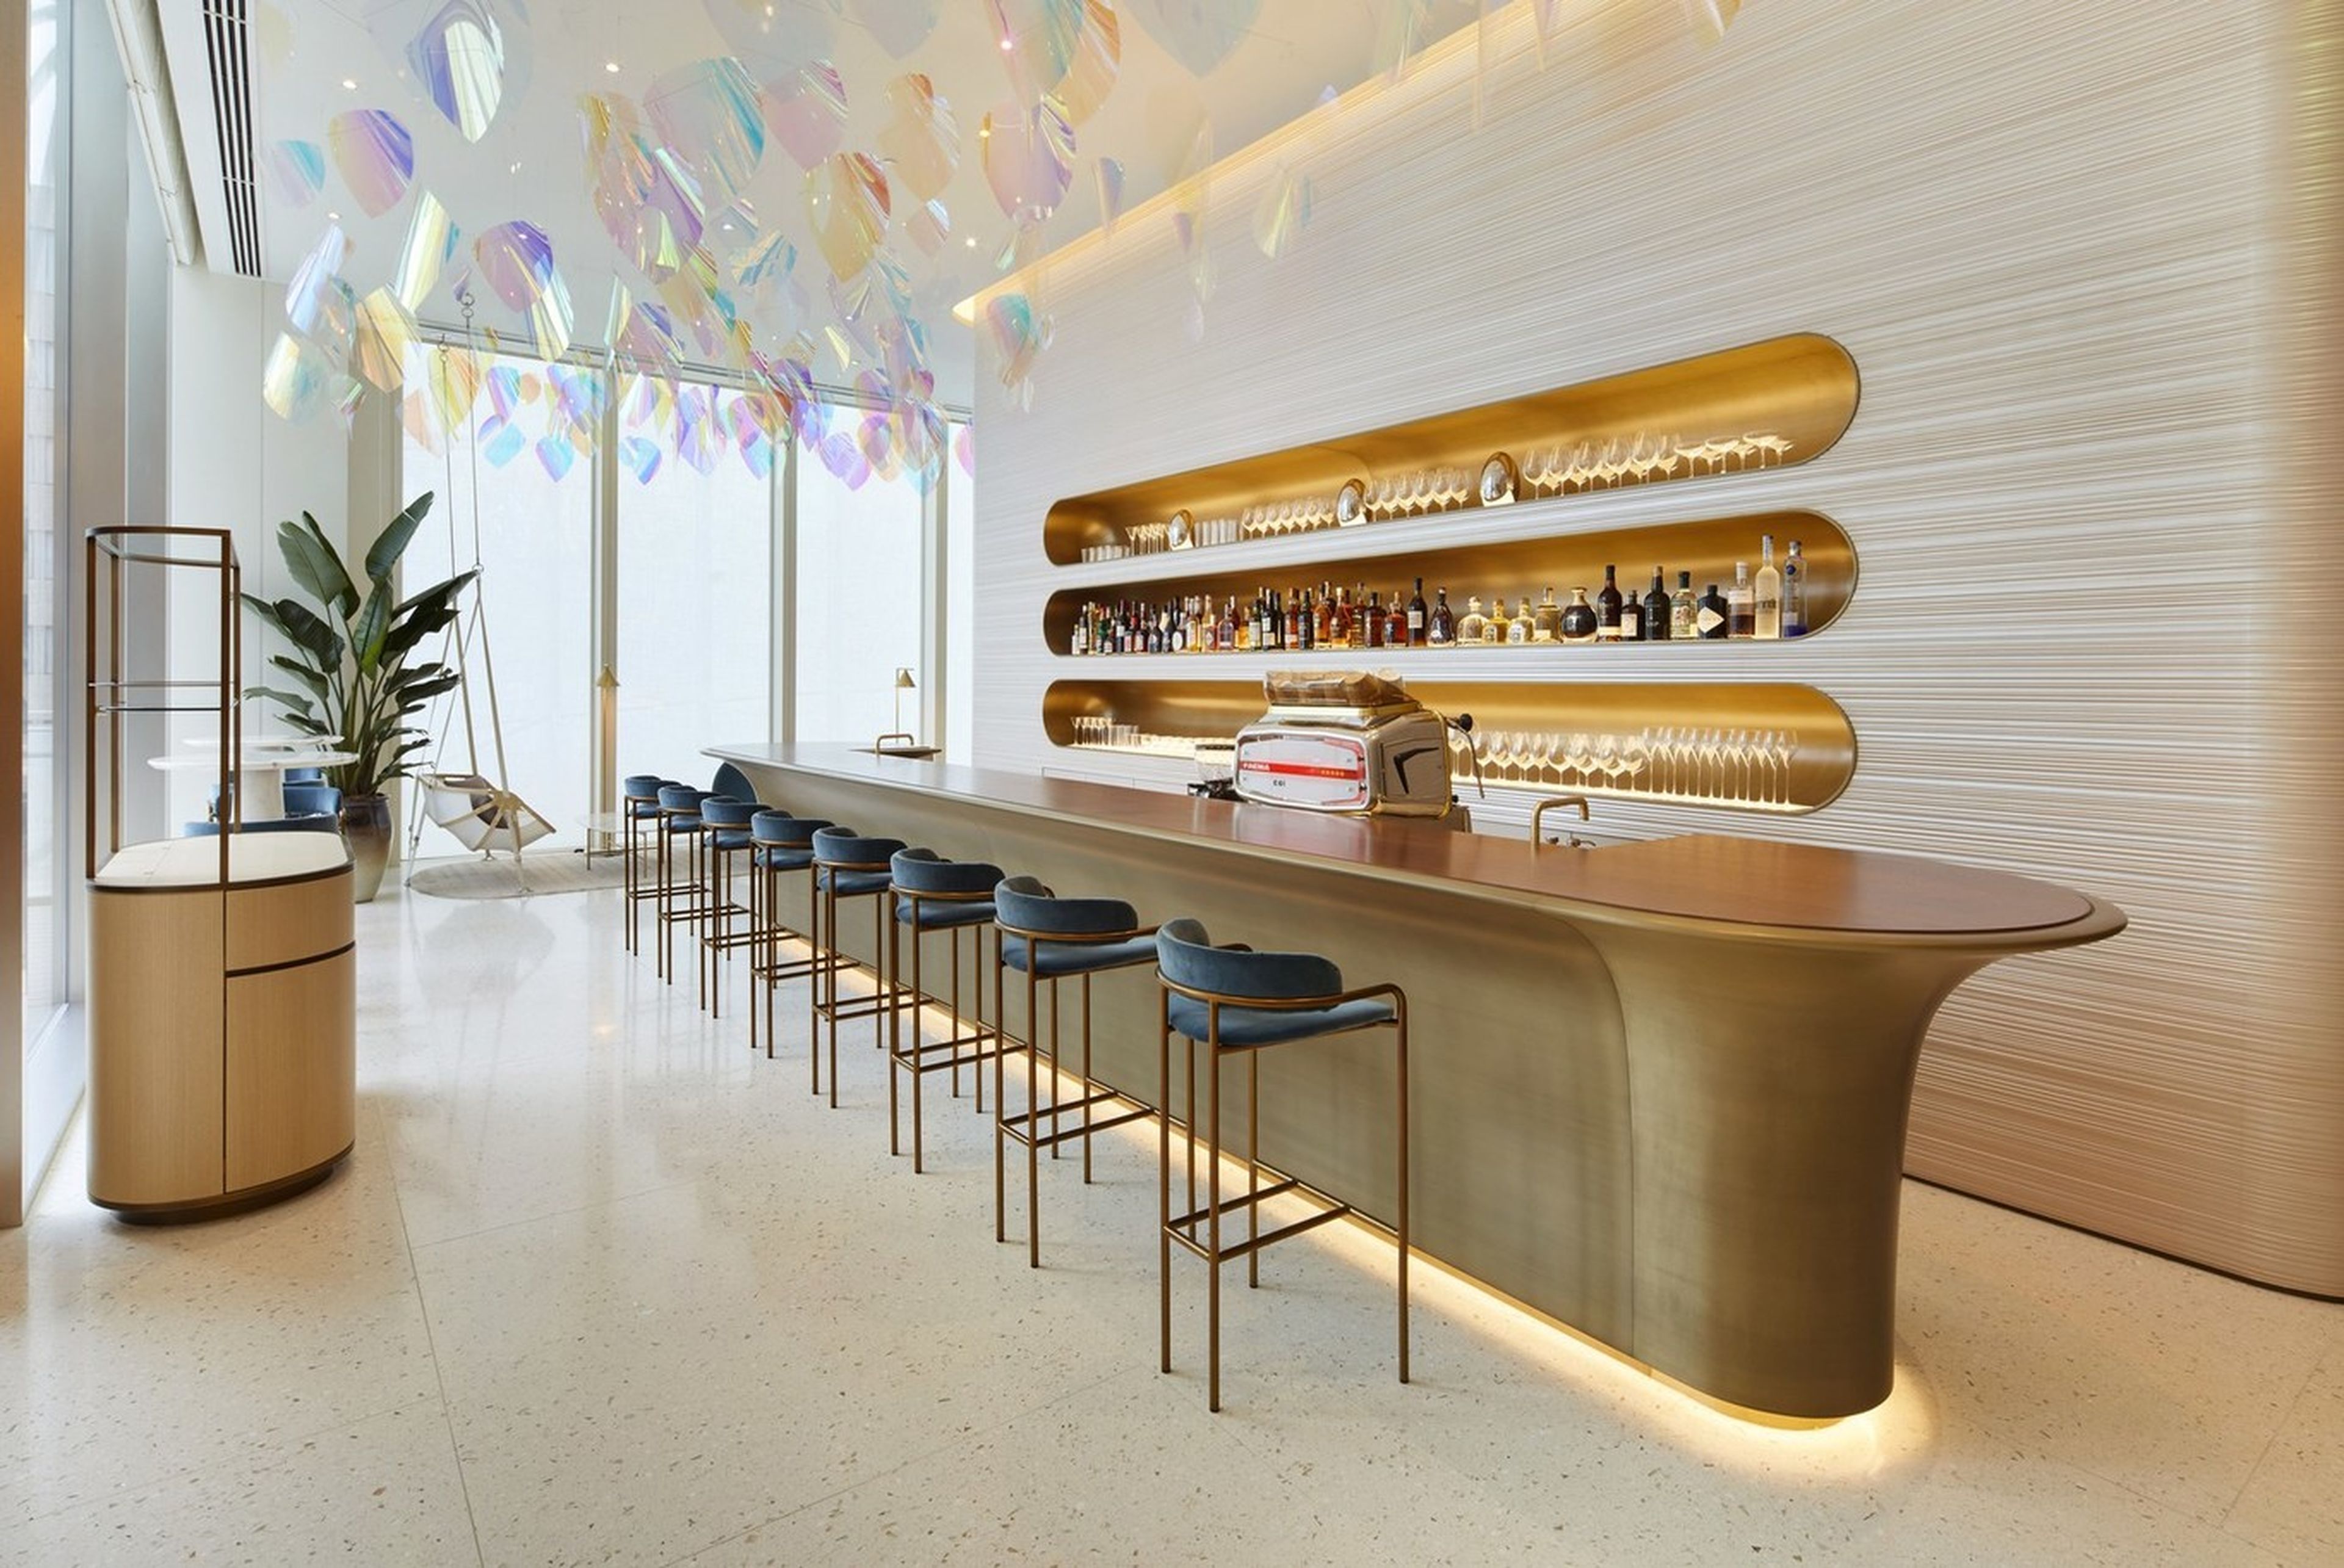 El restaurante de Louis Vuitton tiene un estilo Art Decó